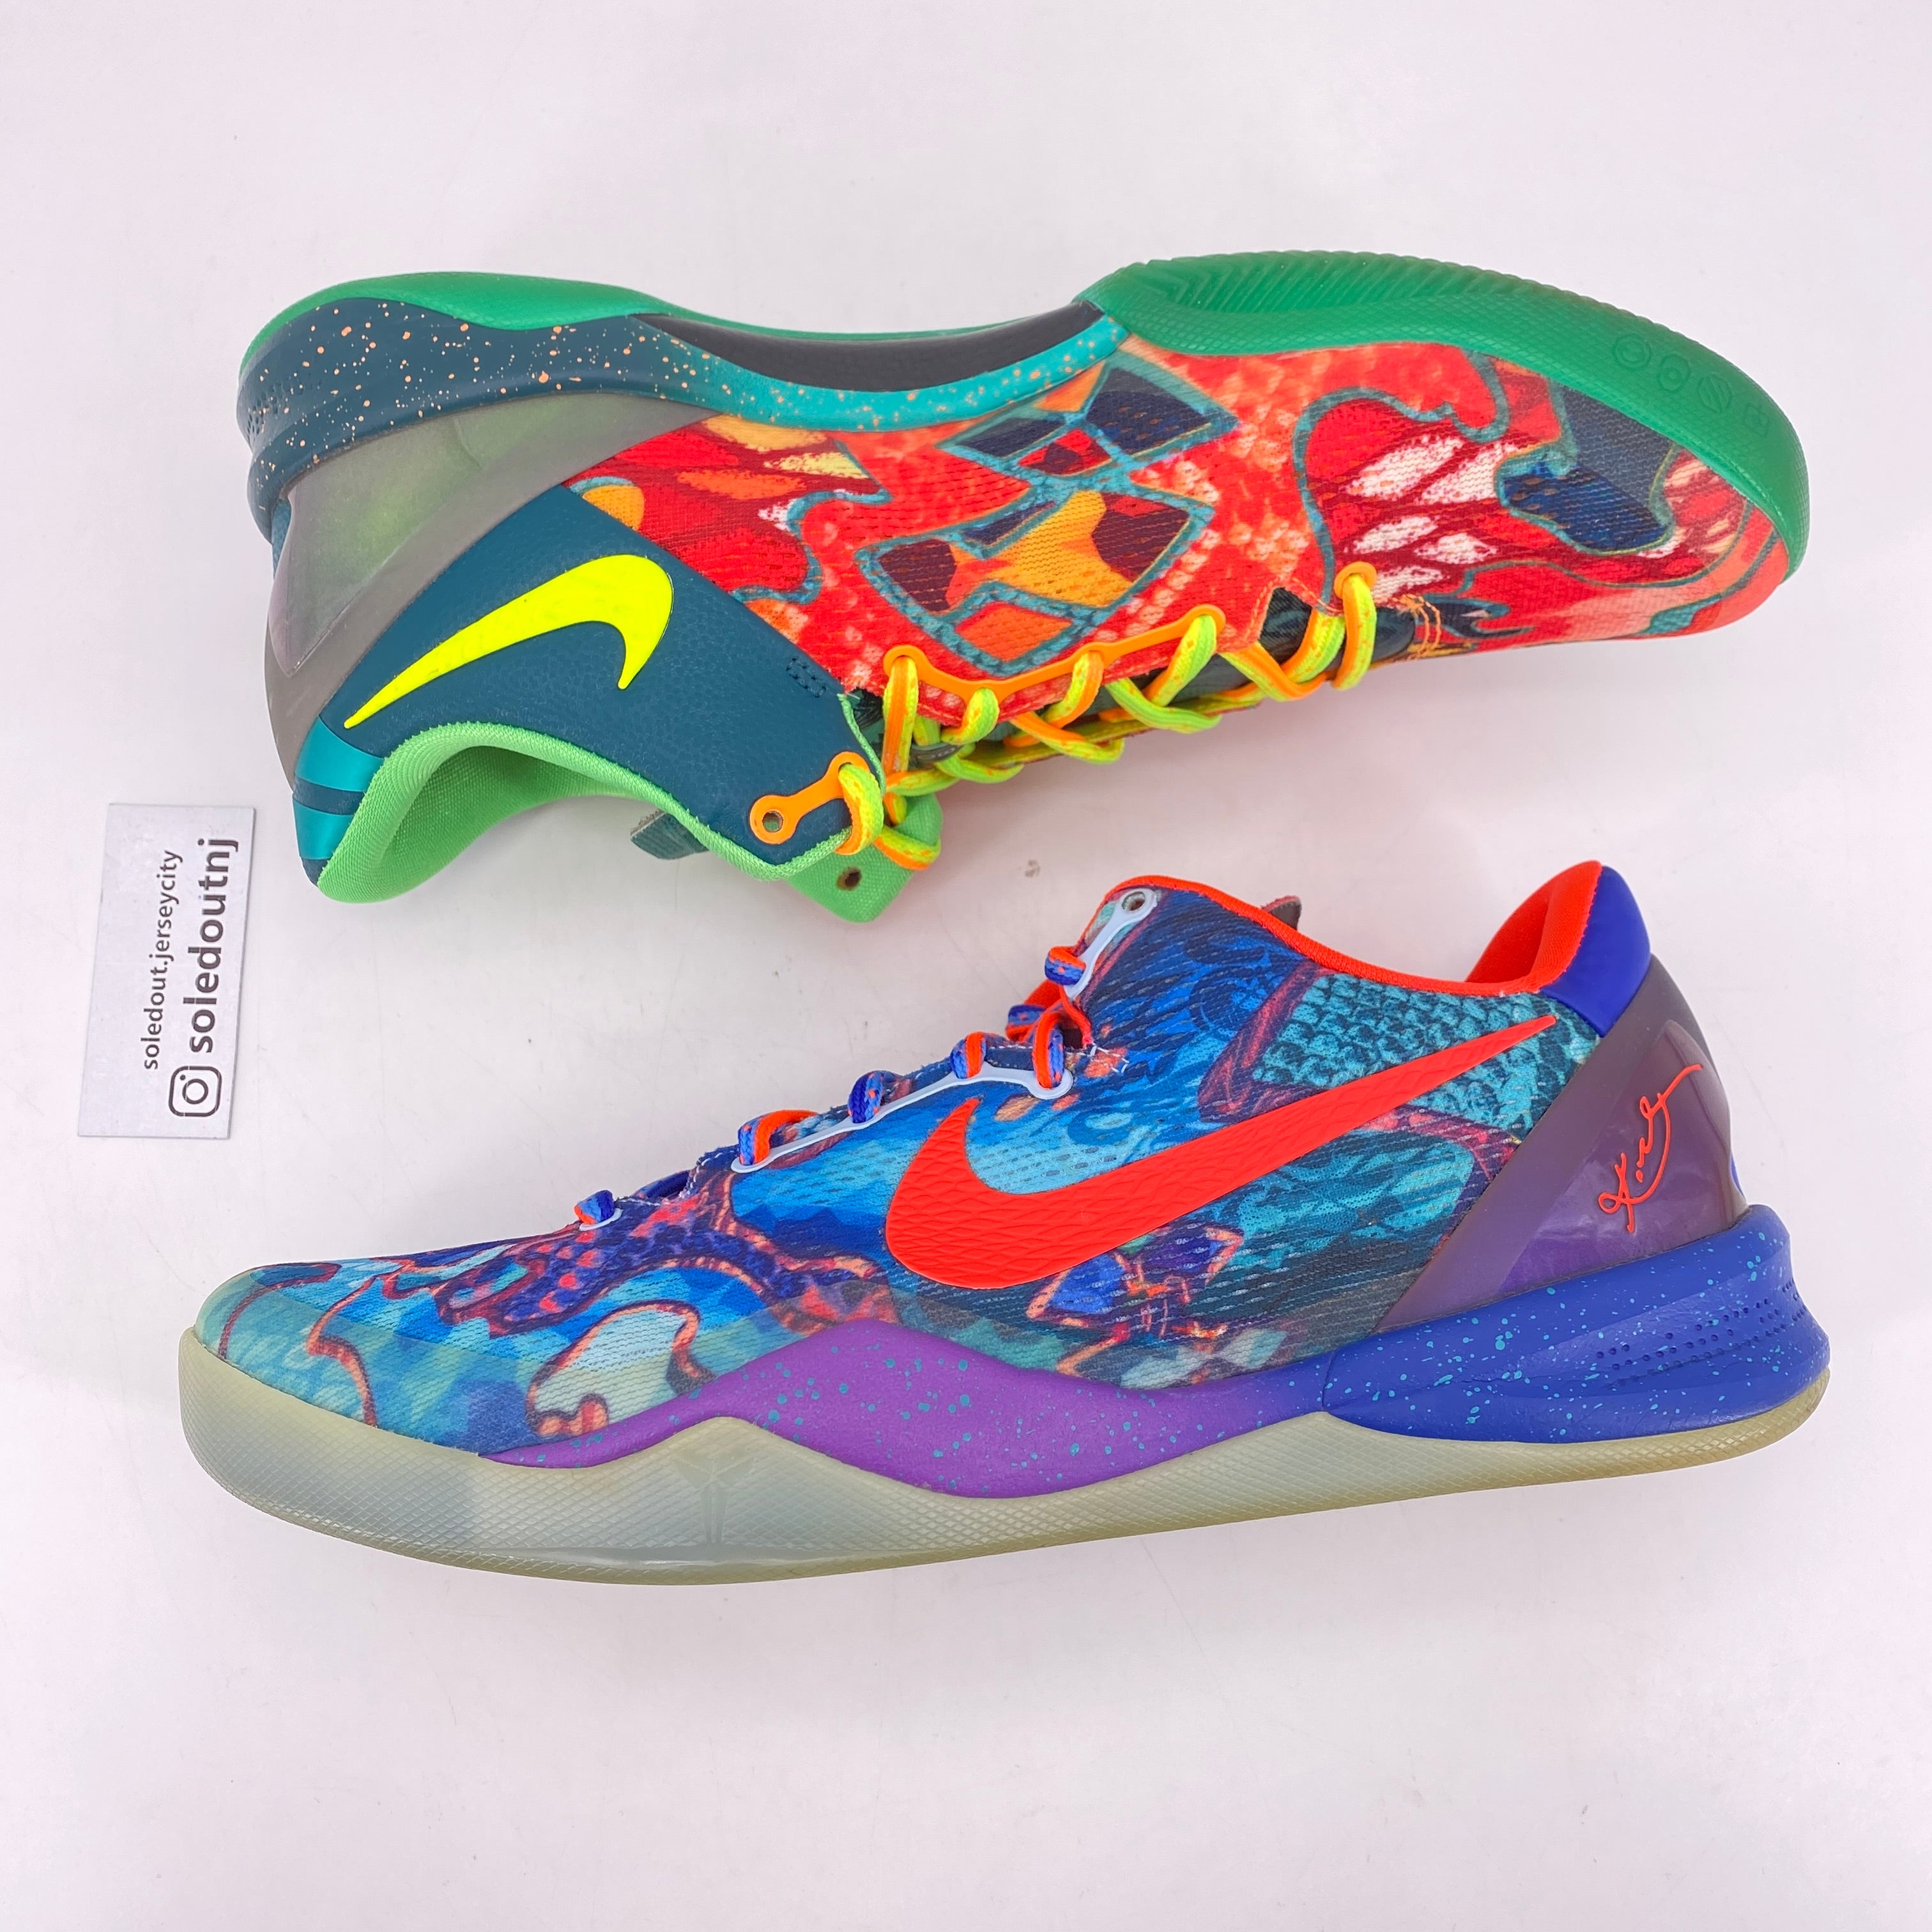 Nike Kobe 8 "What The Kobe" 2013 Used Size 11.5